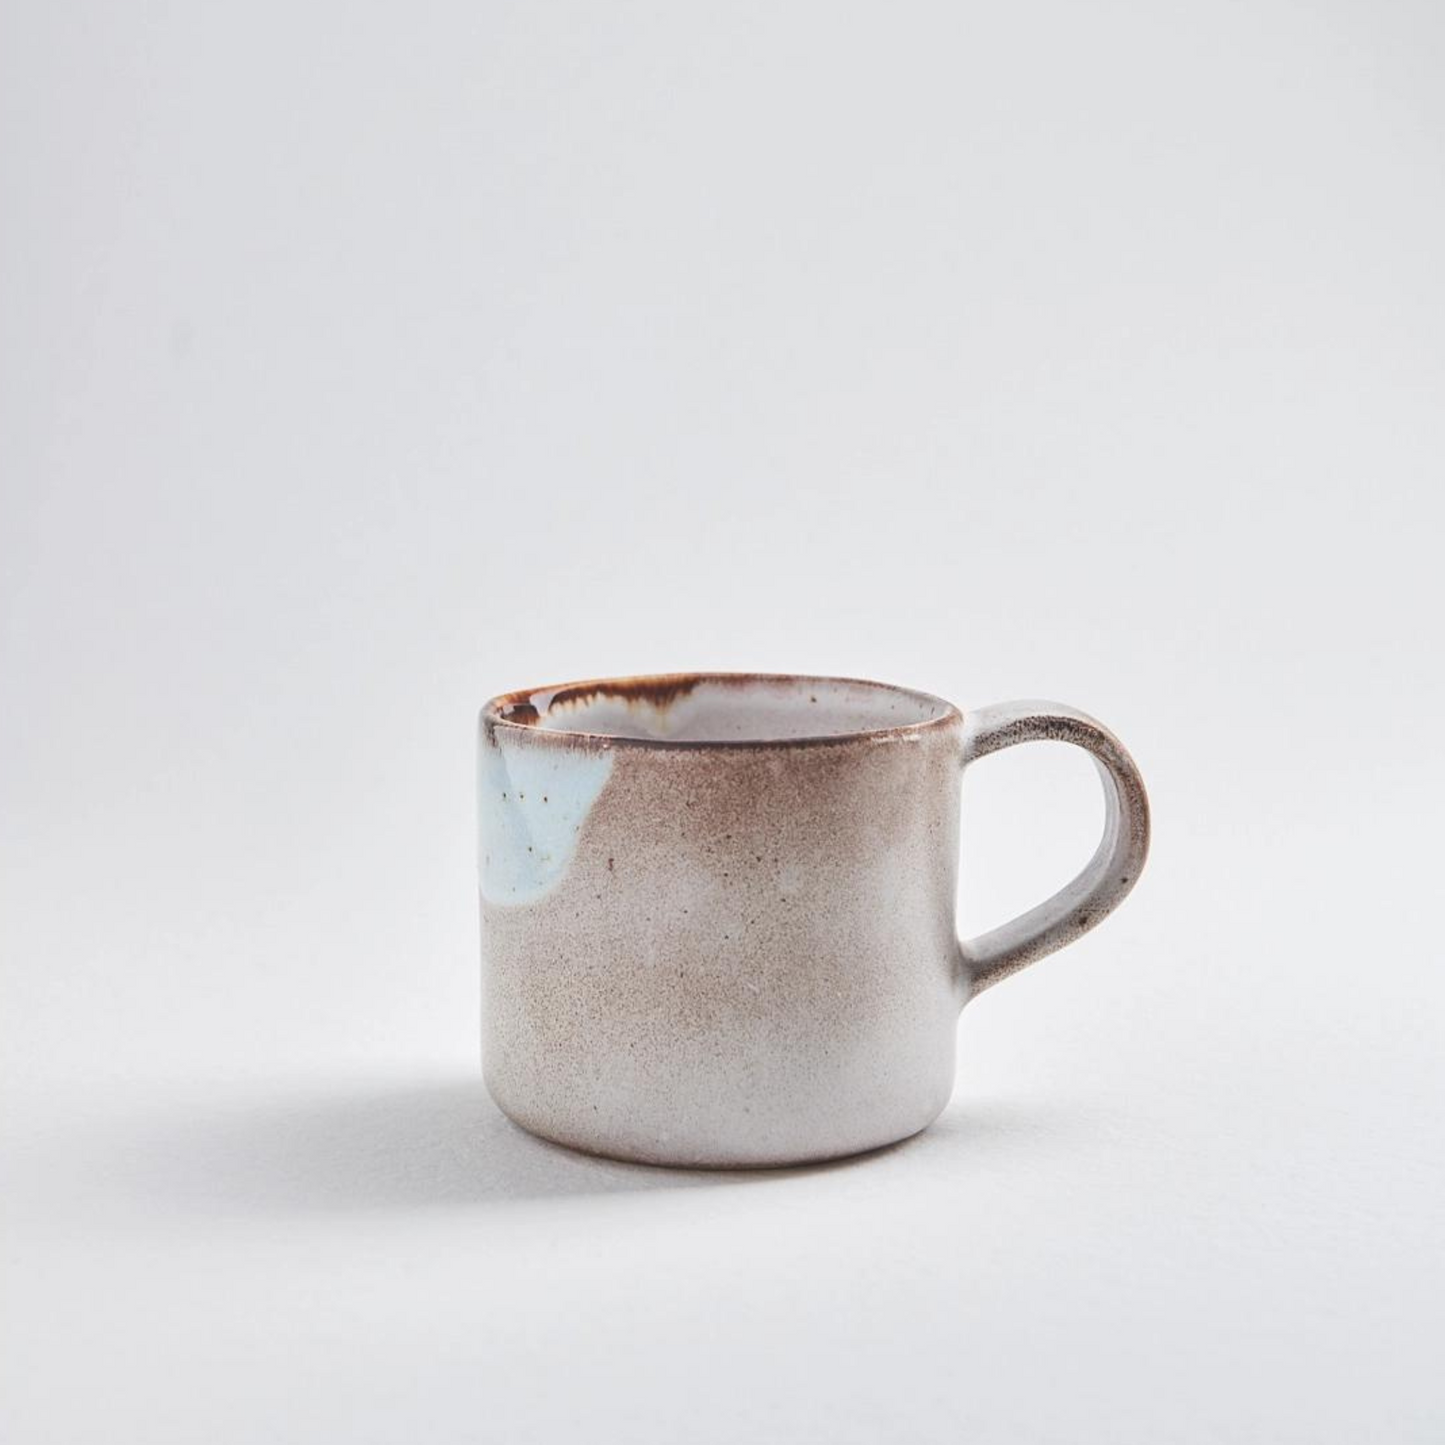 Handmade Melting Ceramic Mug